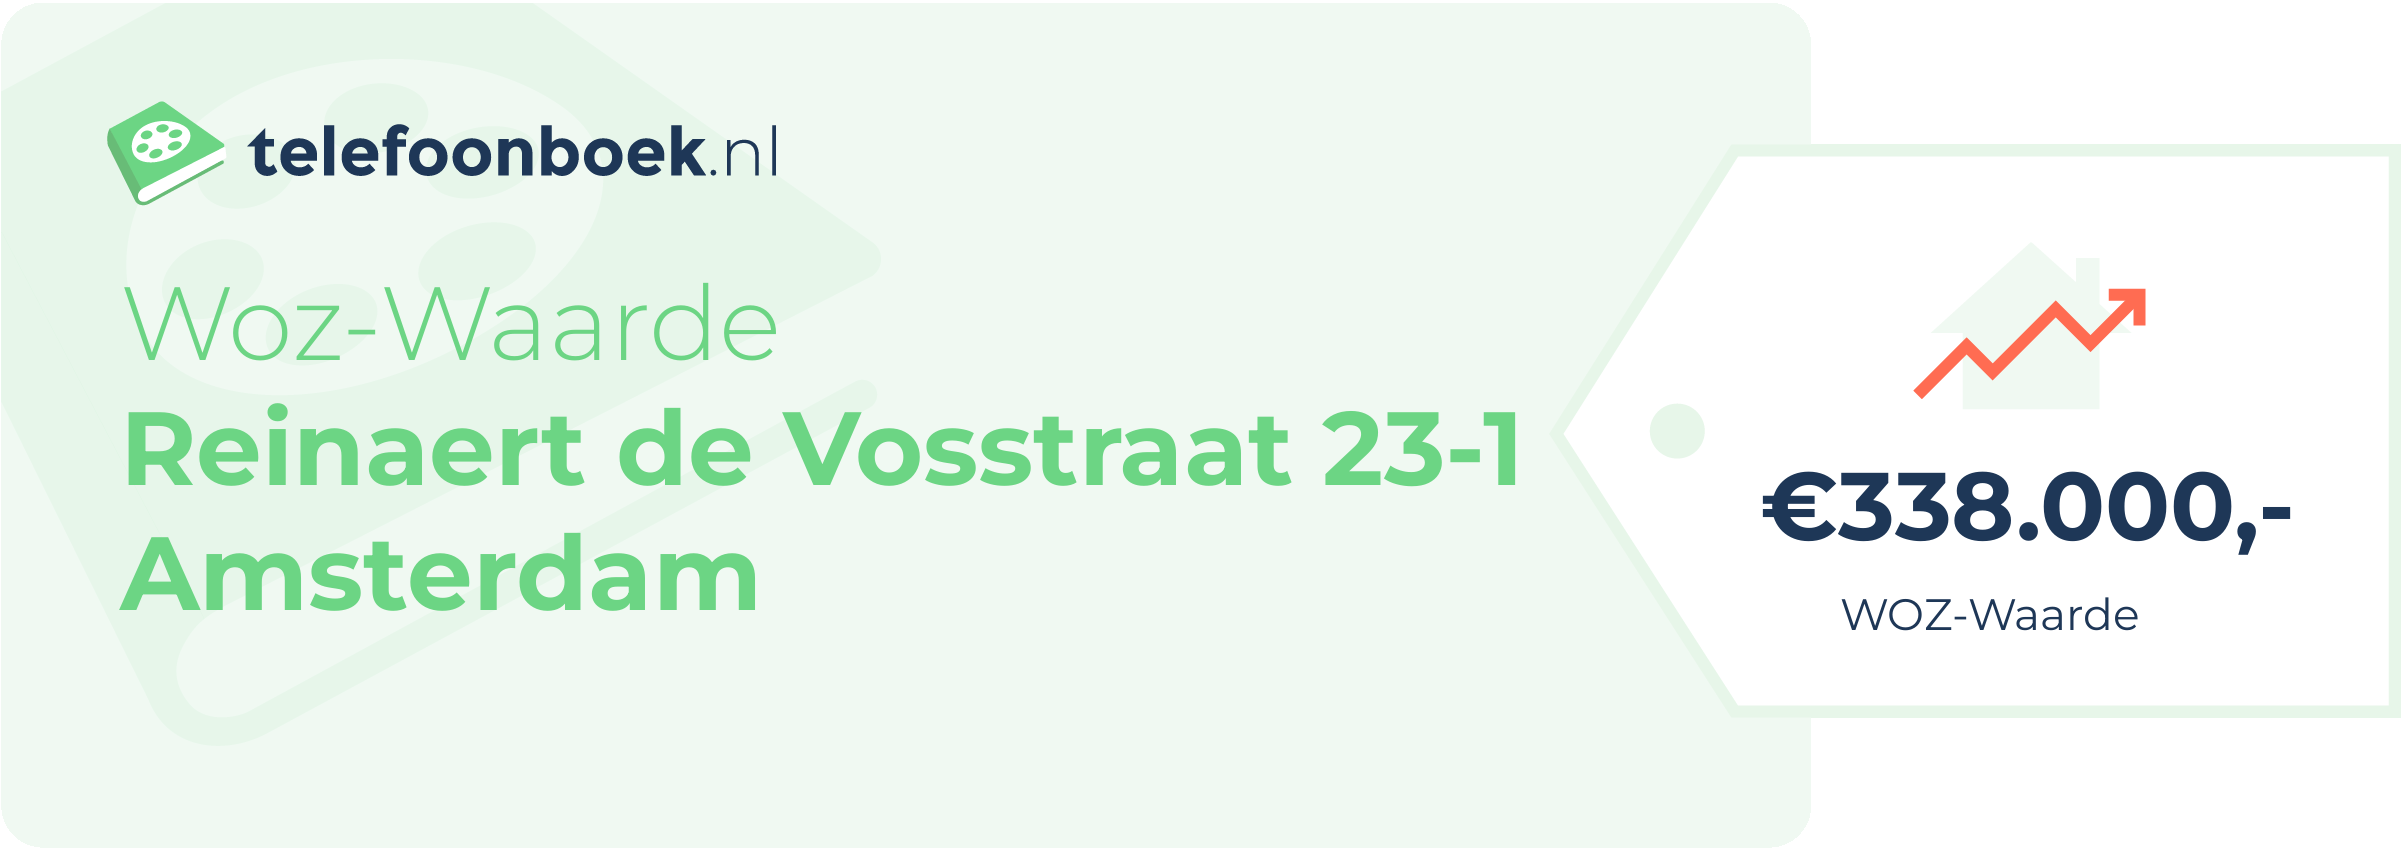 WOZ-waarde Reinaert De Vosstraat 23-1 Amsterdam